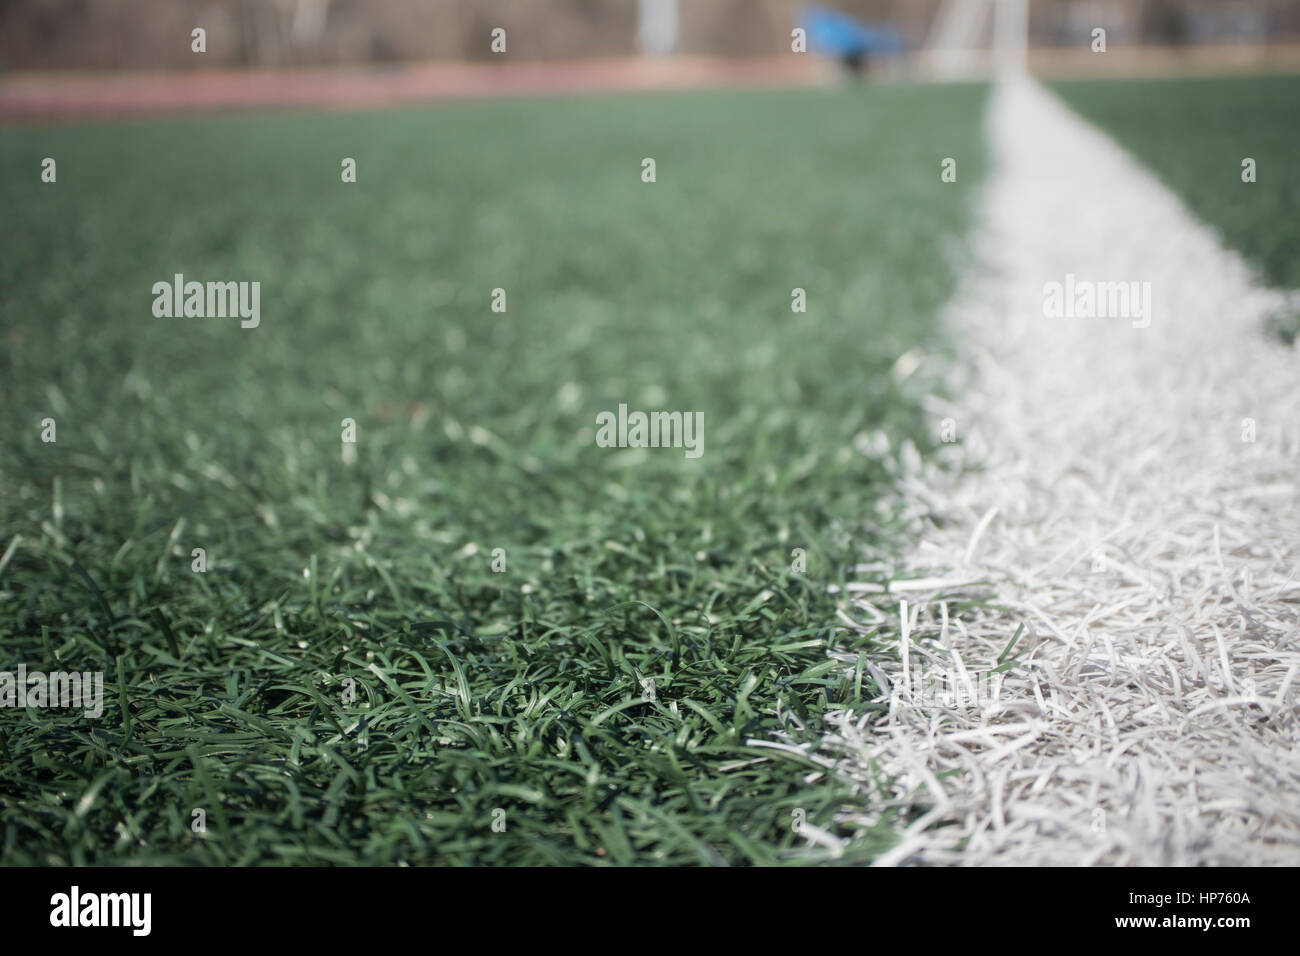 der Kunstrasen-Fußballplatz: für die Nutzung des Hintergrunds, absichtlich unscharf gestellt. Stockfoto